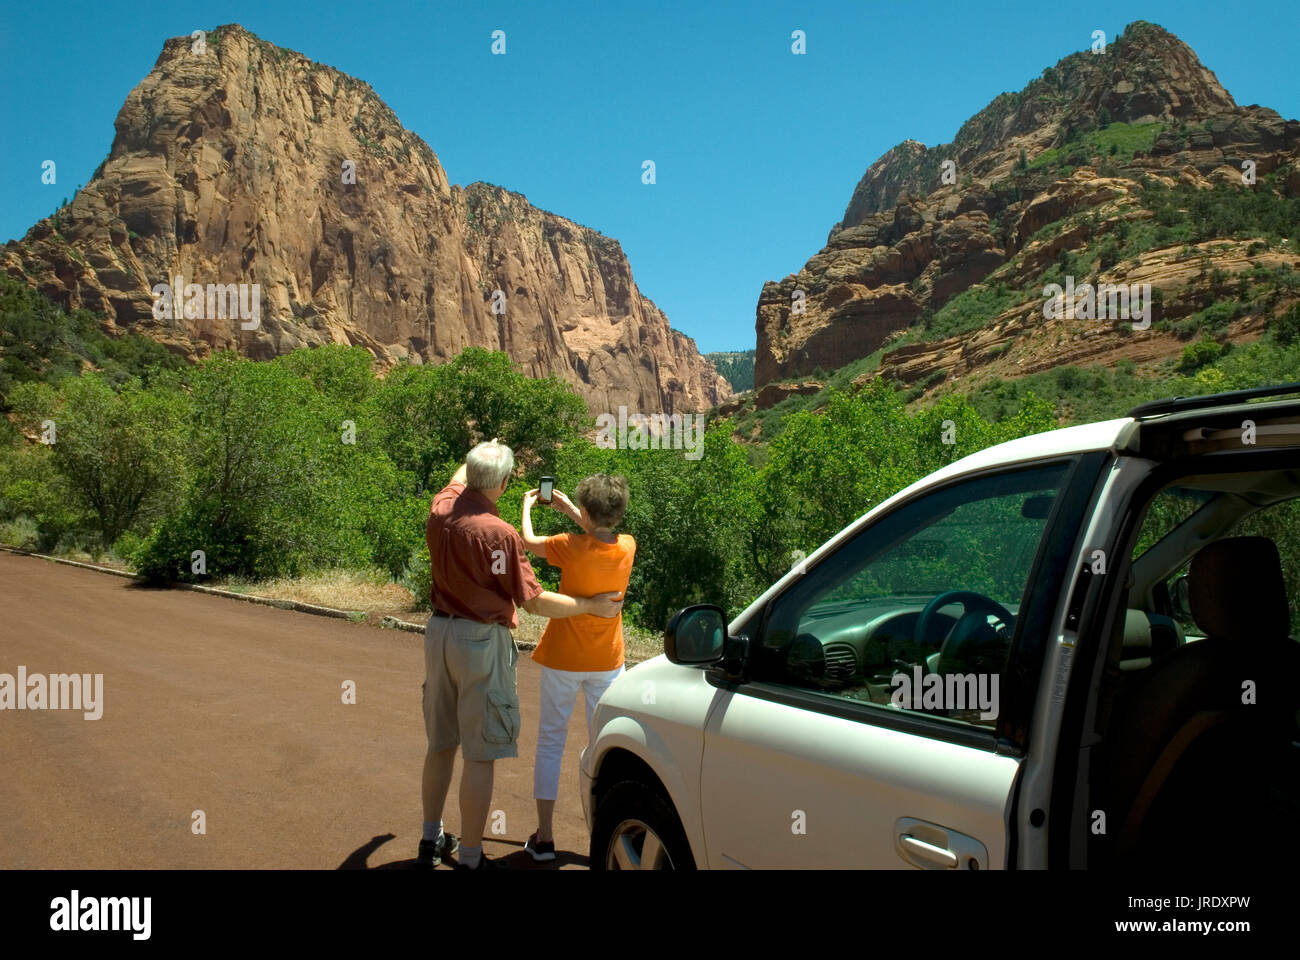 Kaukasisches Seniorenpaar (60-70) in den Kolob Canyons im Zion National Park Utah USA. Frau trägt orangenes Hemd und fotografiert, während der Mann zeigt. Stockfoto